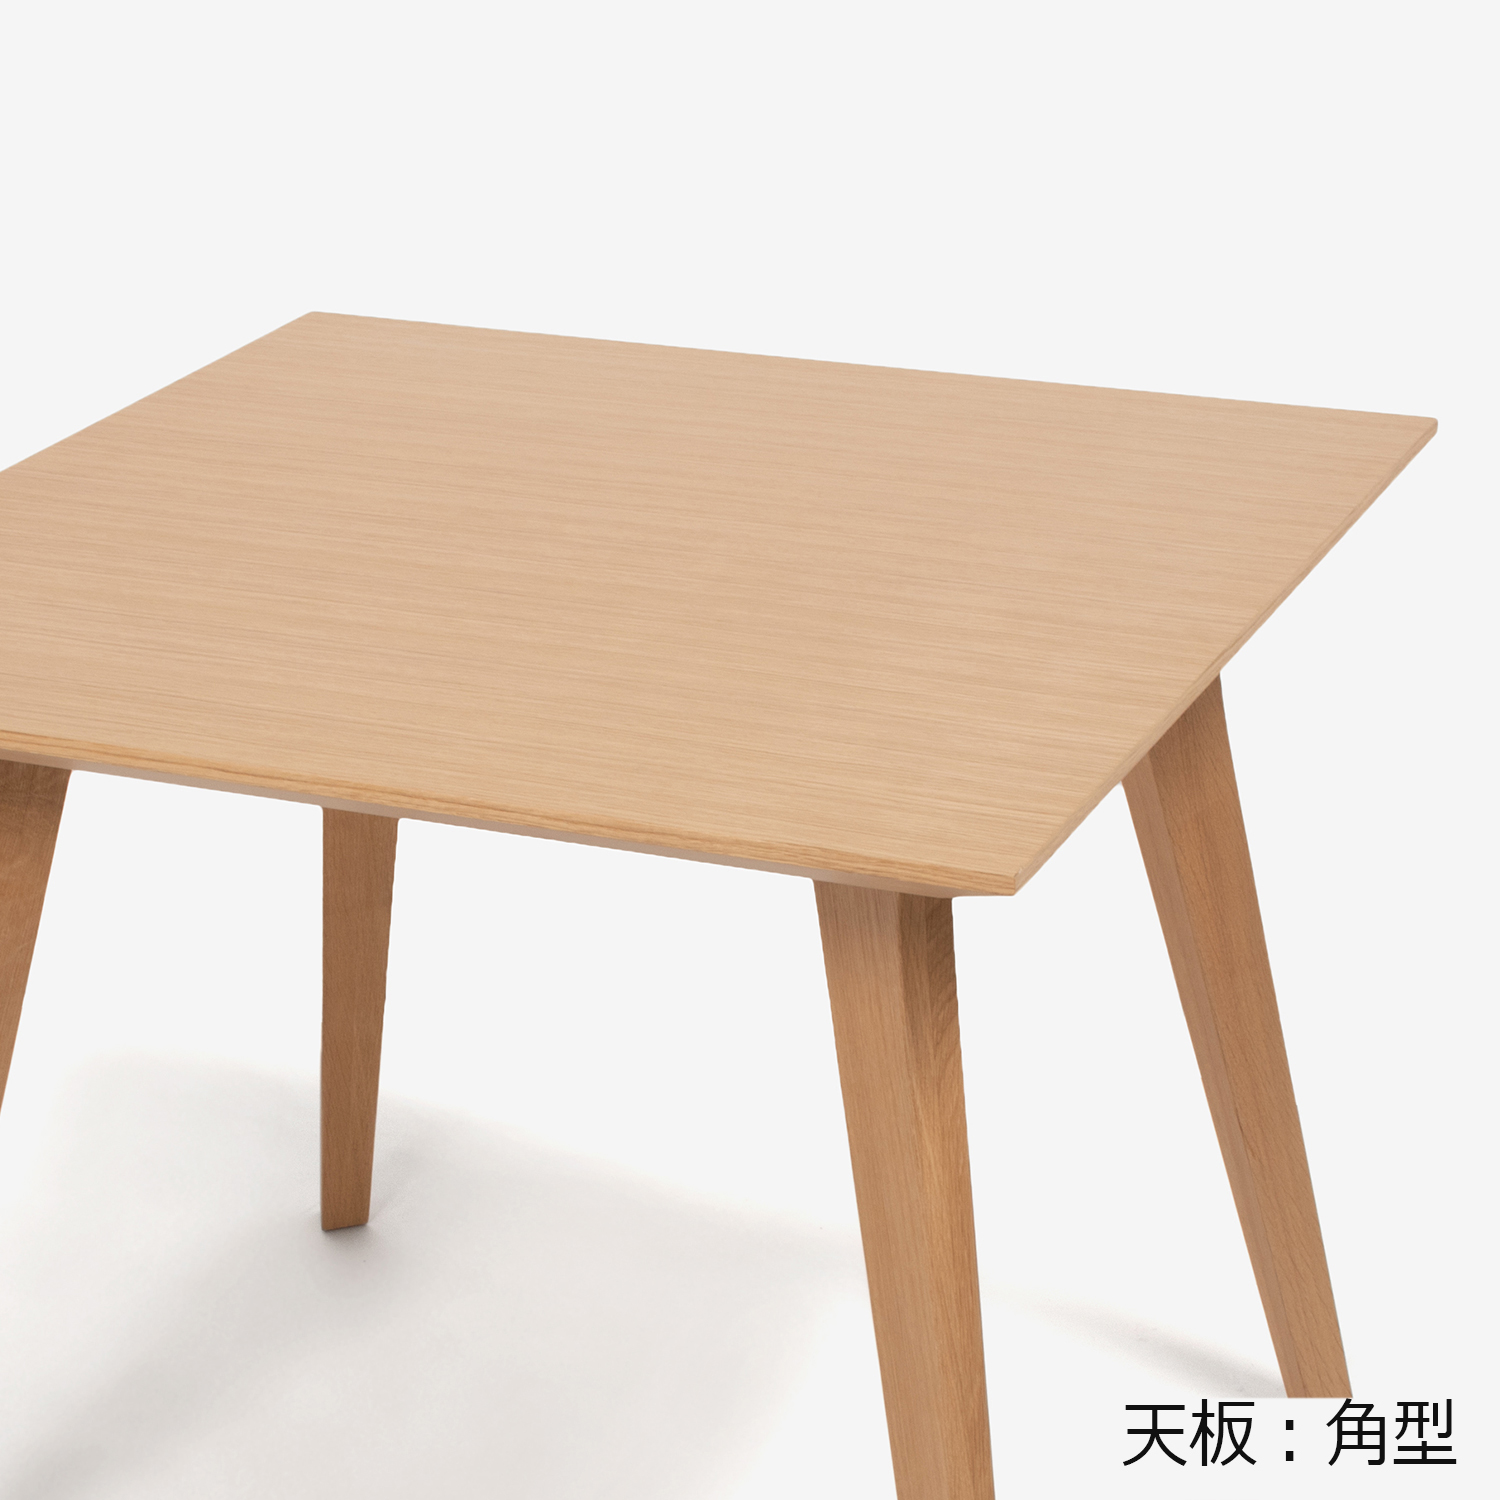 ダイニングテーブル「ジャスト」幅85cm オーク材ホワイトオーク色 角脚【決算セールのため30%OFF】